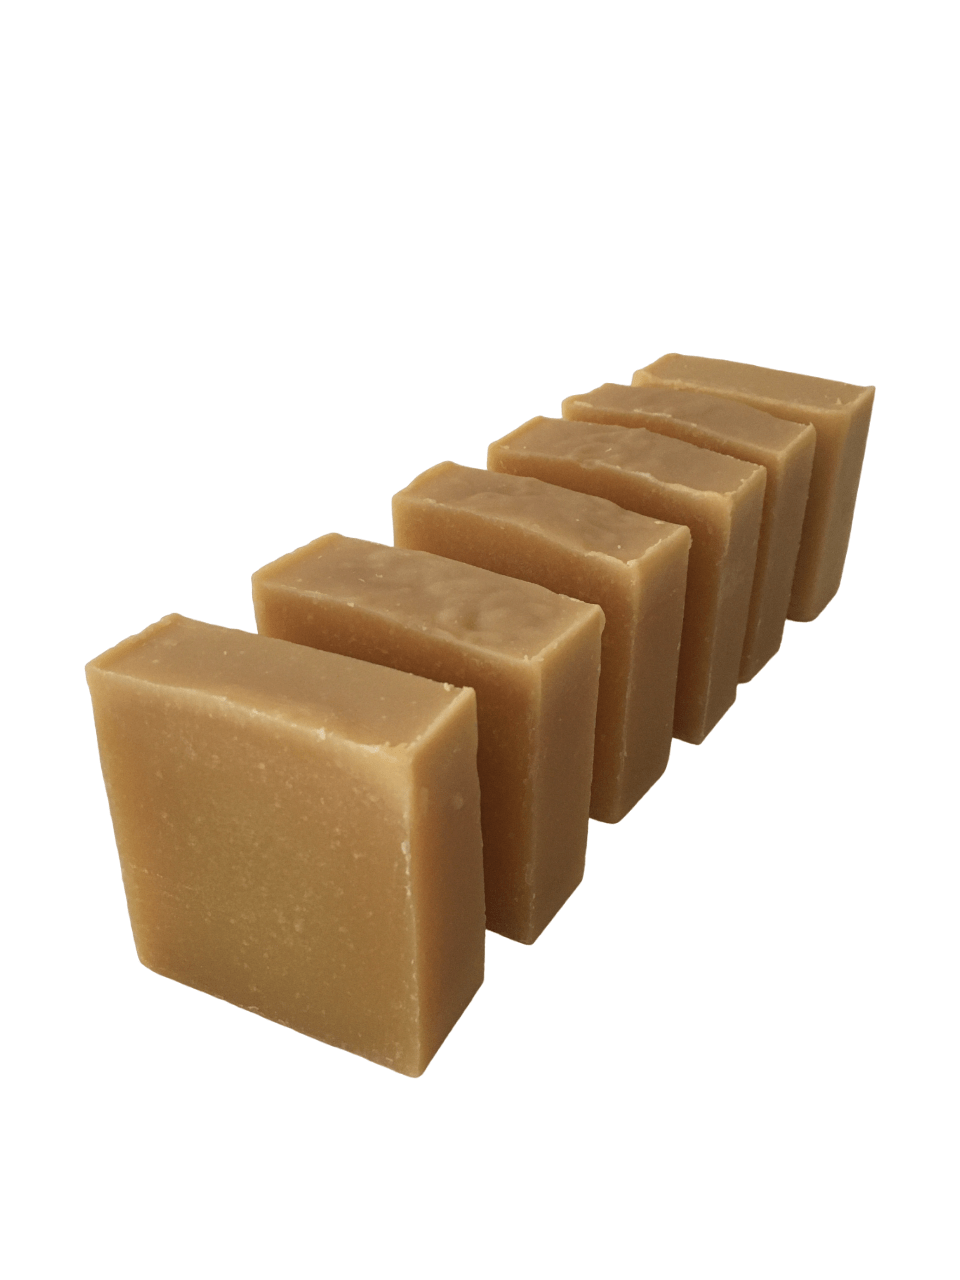 Turmeric Soap Bars - Elite Creed Natural